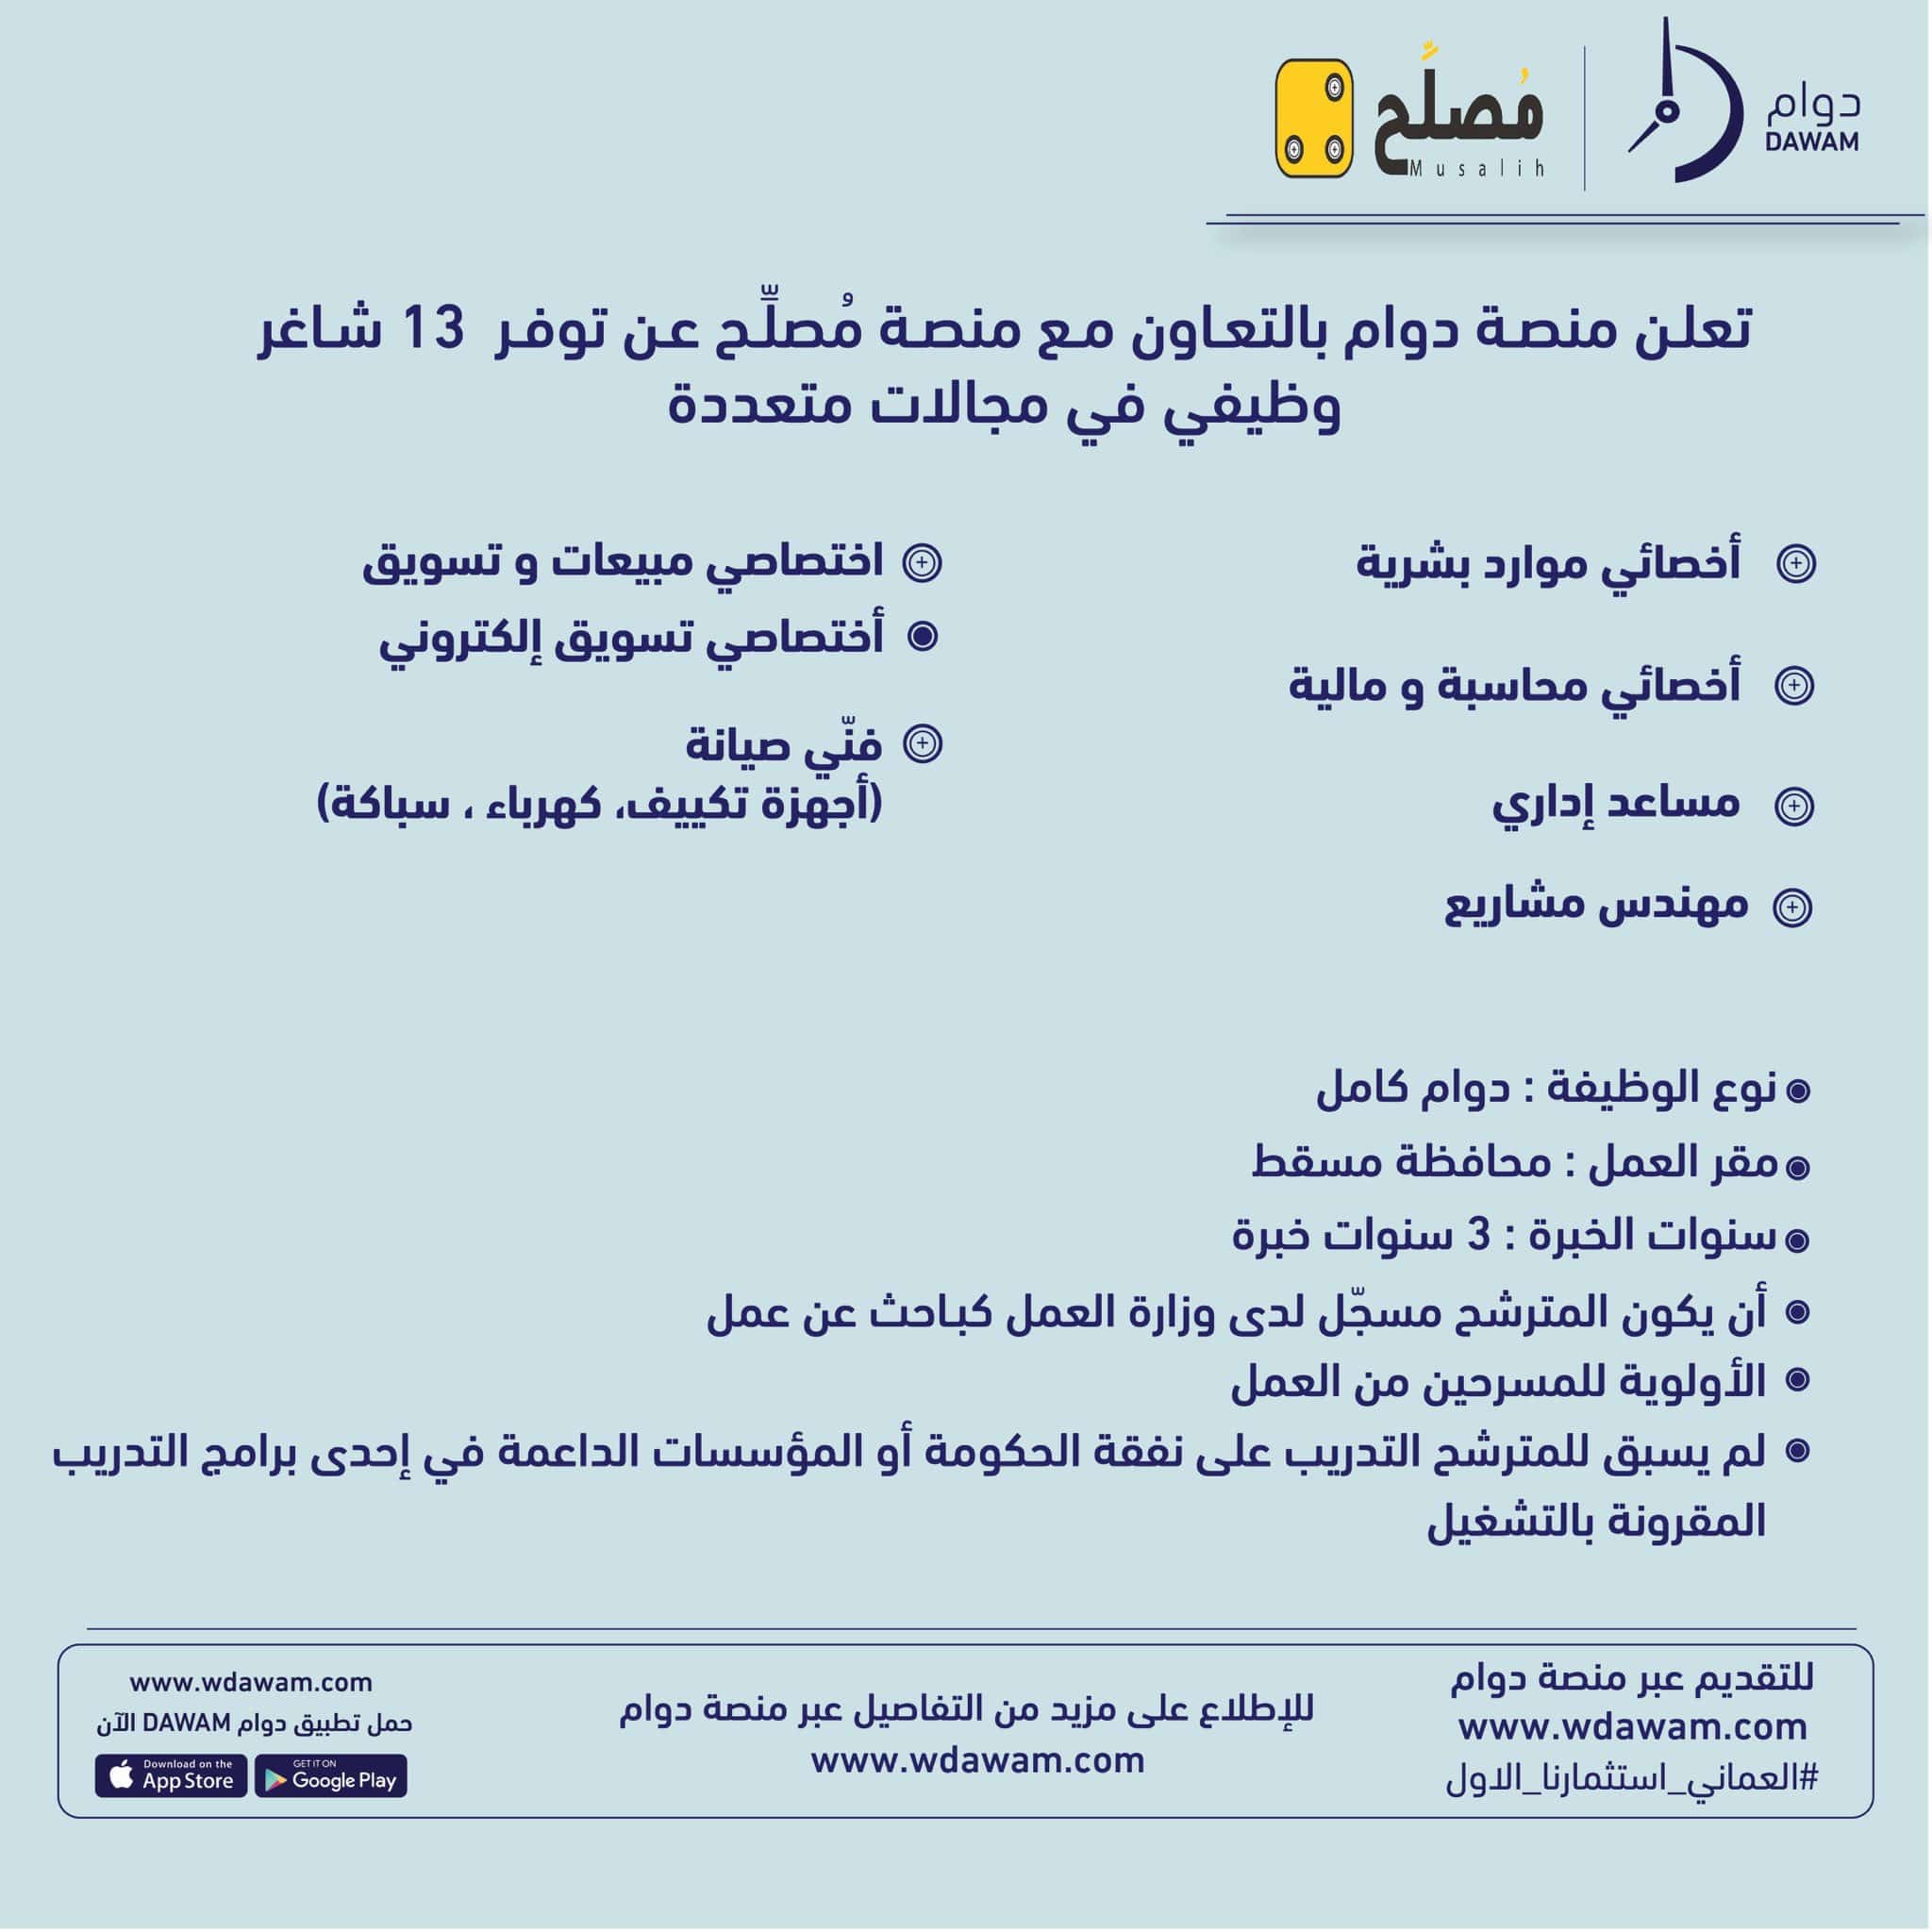 وظائف مُصلِّح 2023 ( musalih ) في سلطنة عمان لجميع الجنسيات